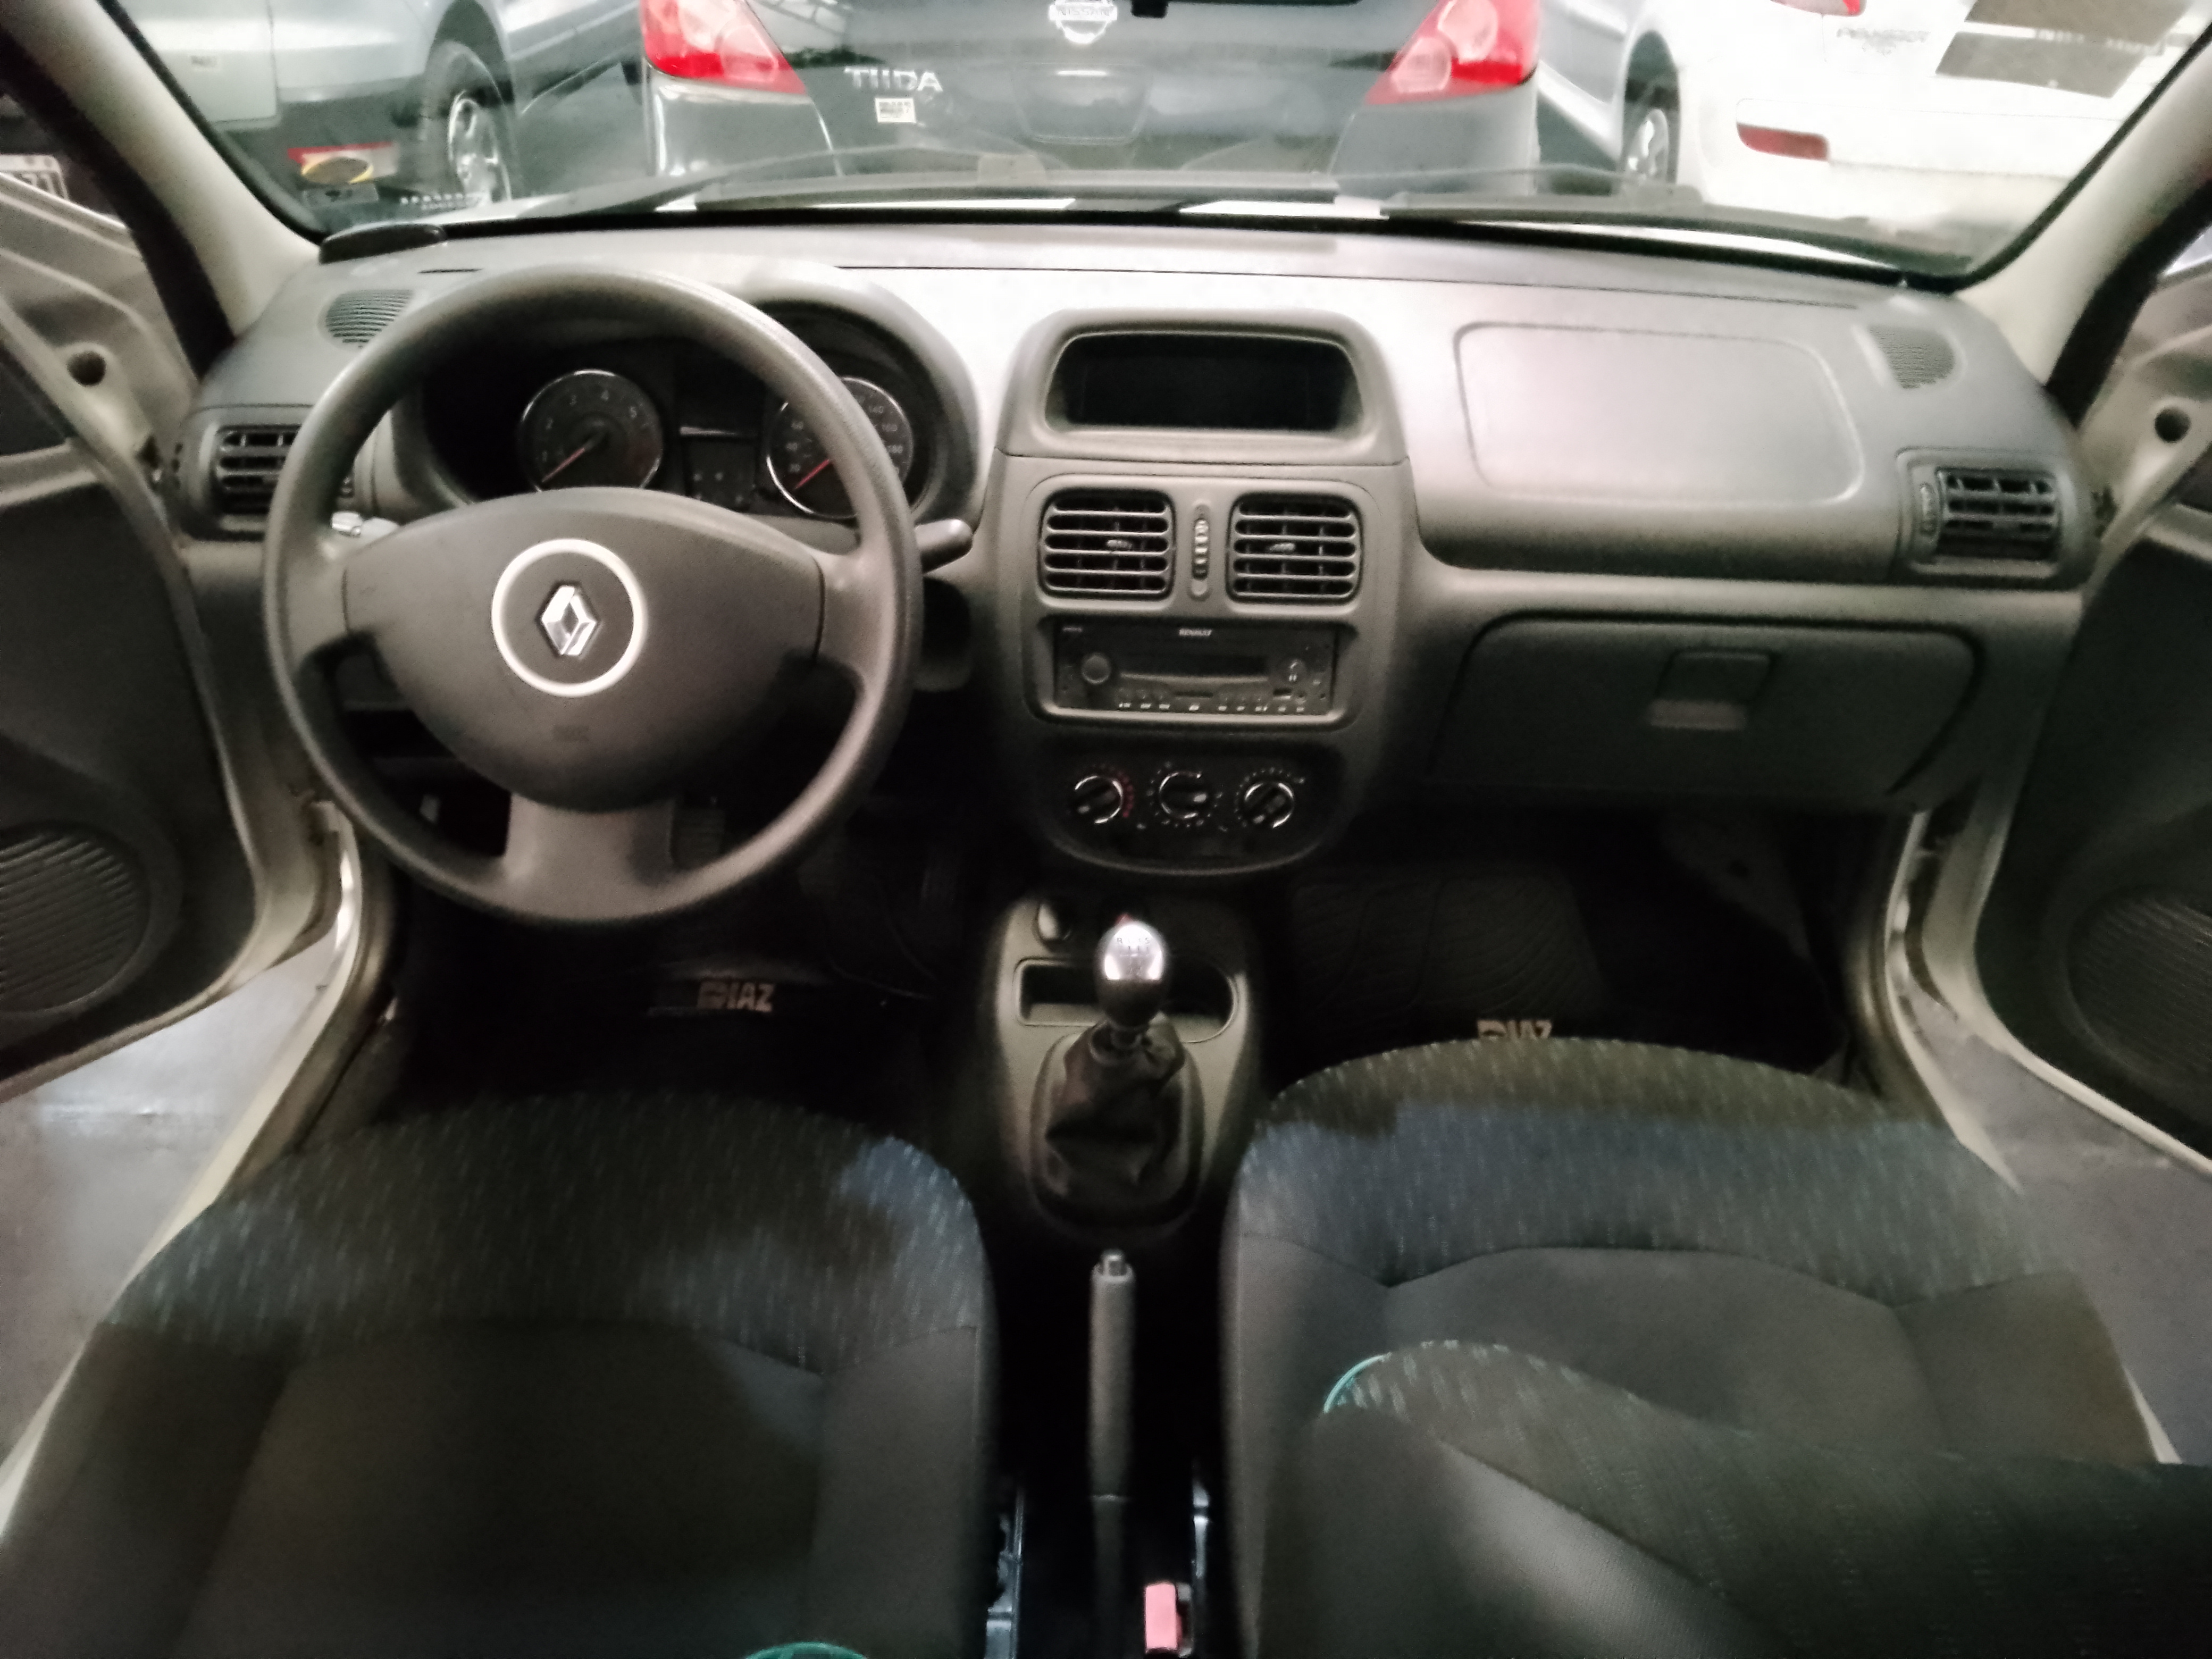 Renault Clio Confort 1.2